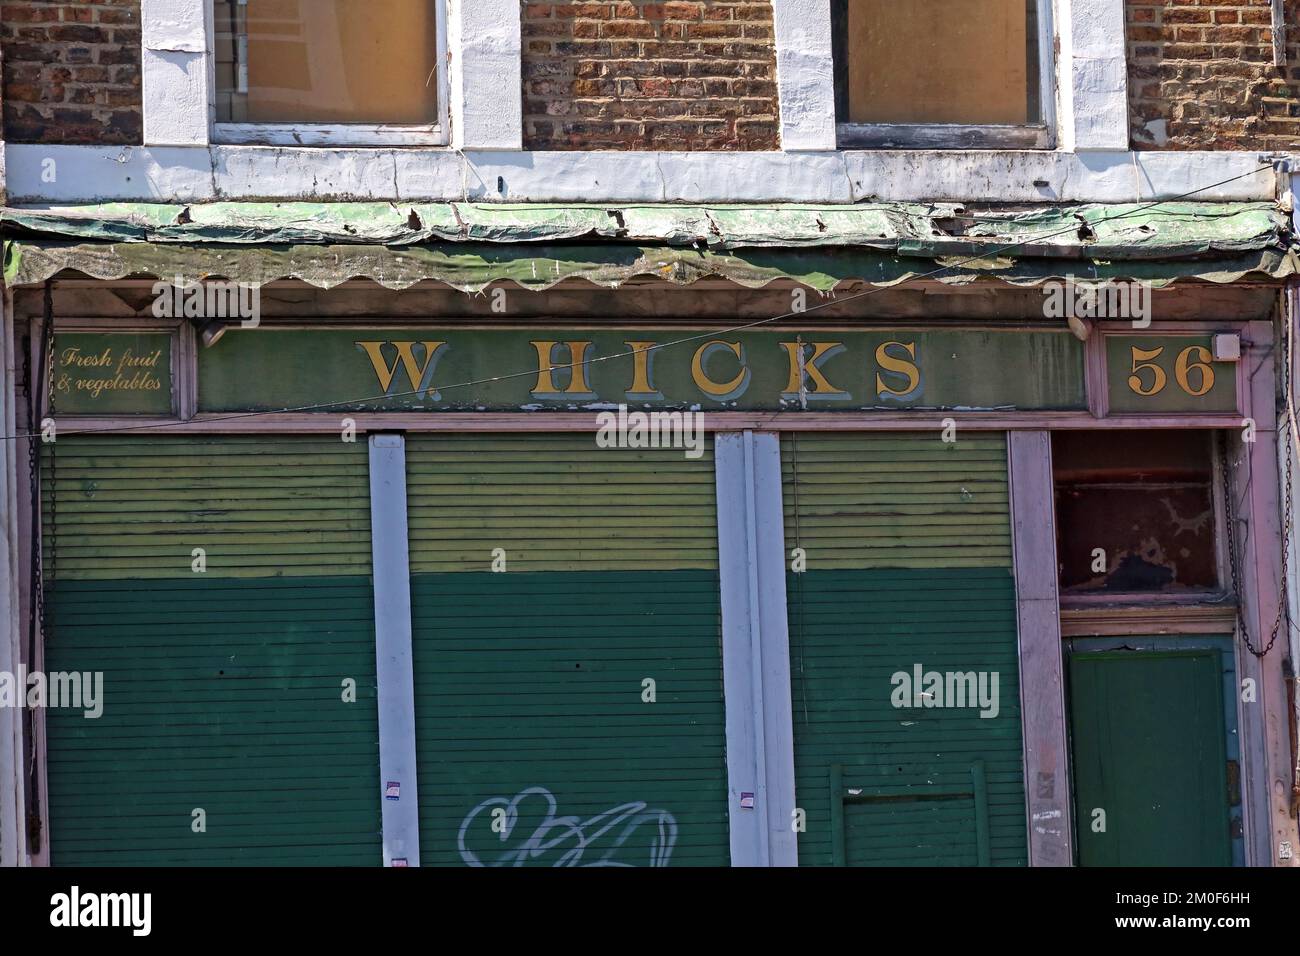 W.Hicks, vecchio negozio di fruttivendolo, frutta fresca e verdura, al 56 di Golborne Road, Notting Hill, RBKC, Londra, Inghilterra, REGNO UNITO, W10 5PR Foto Stock